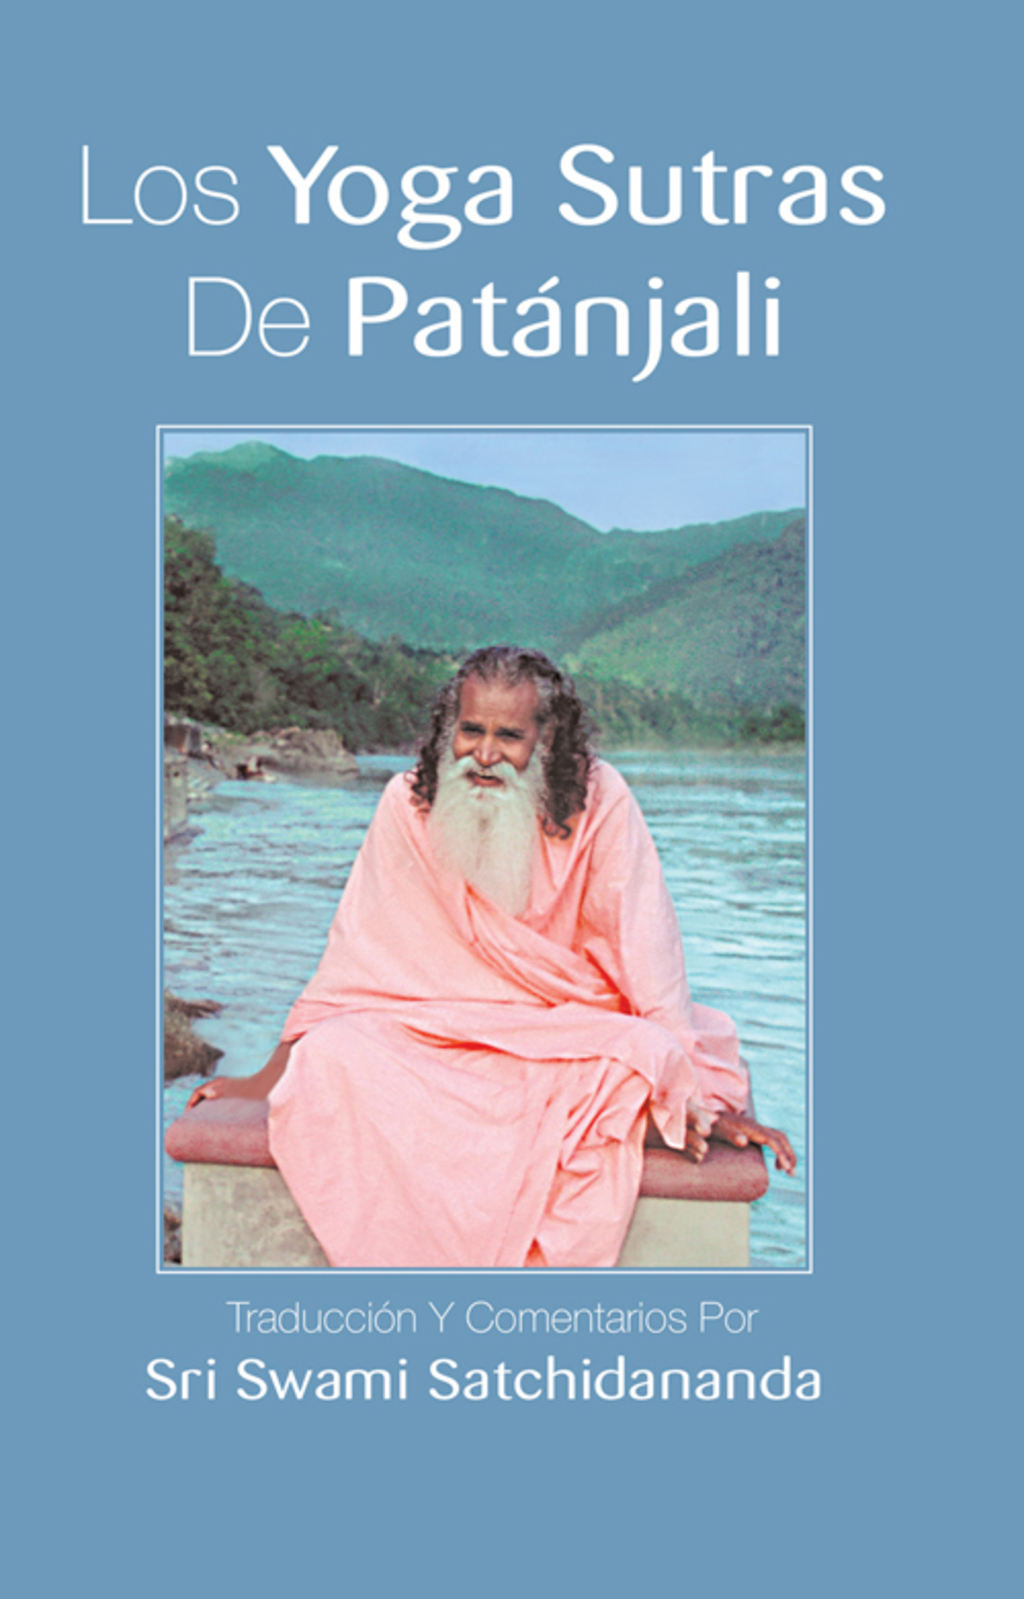 Los yoga sutras de Patanjali (eBook) - Swami Satchidananda,